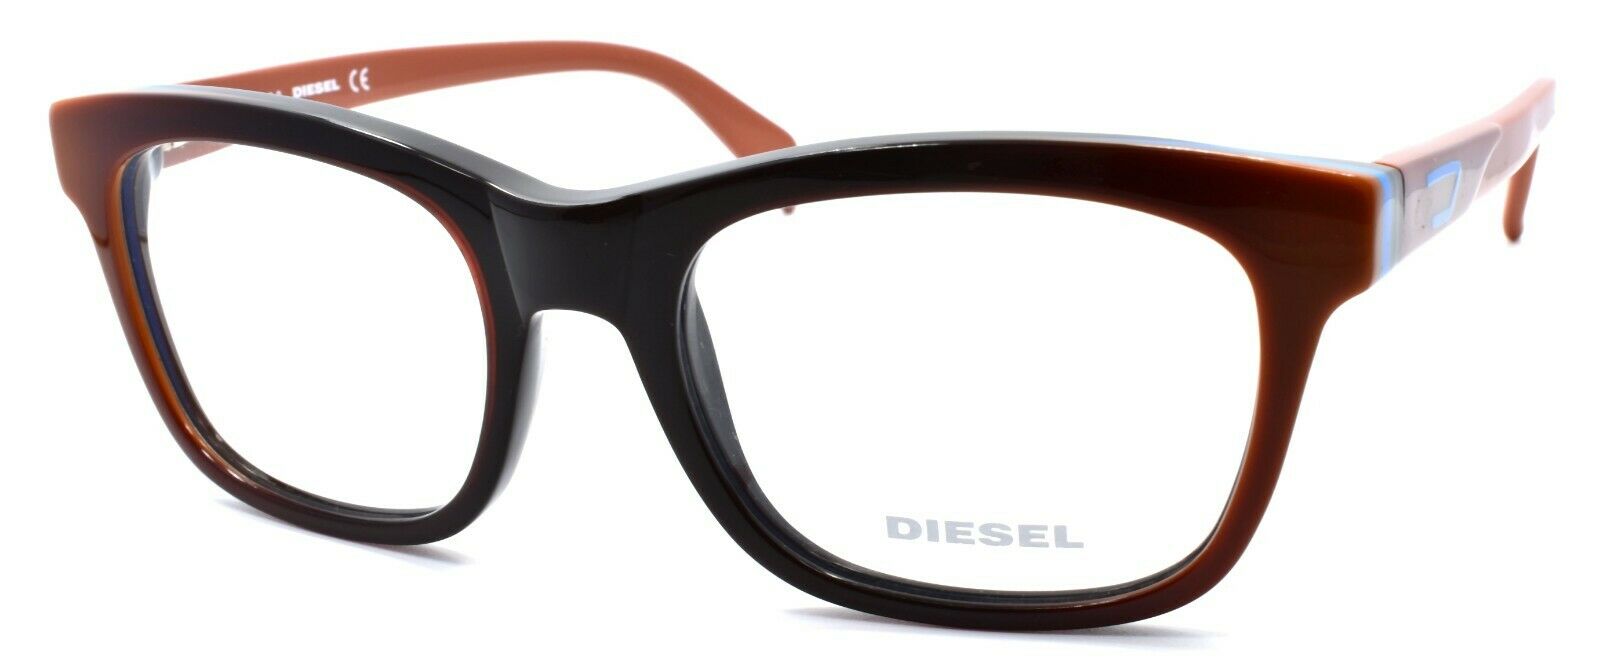 1-Diesel DL5079 050 Unisex Eyeglasses Frames 53-19-145 Brown Gradient-664689614110-IKSpecs